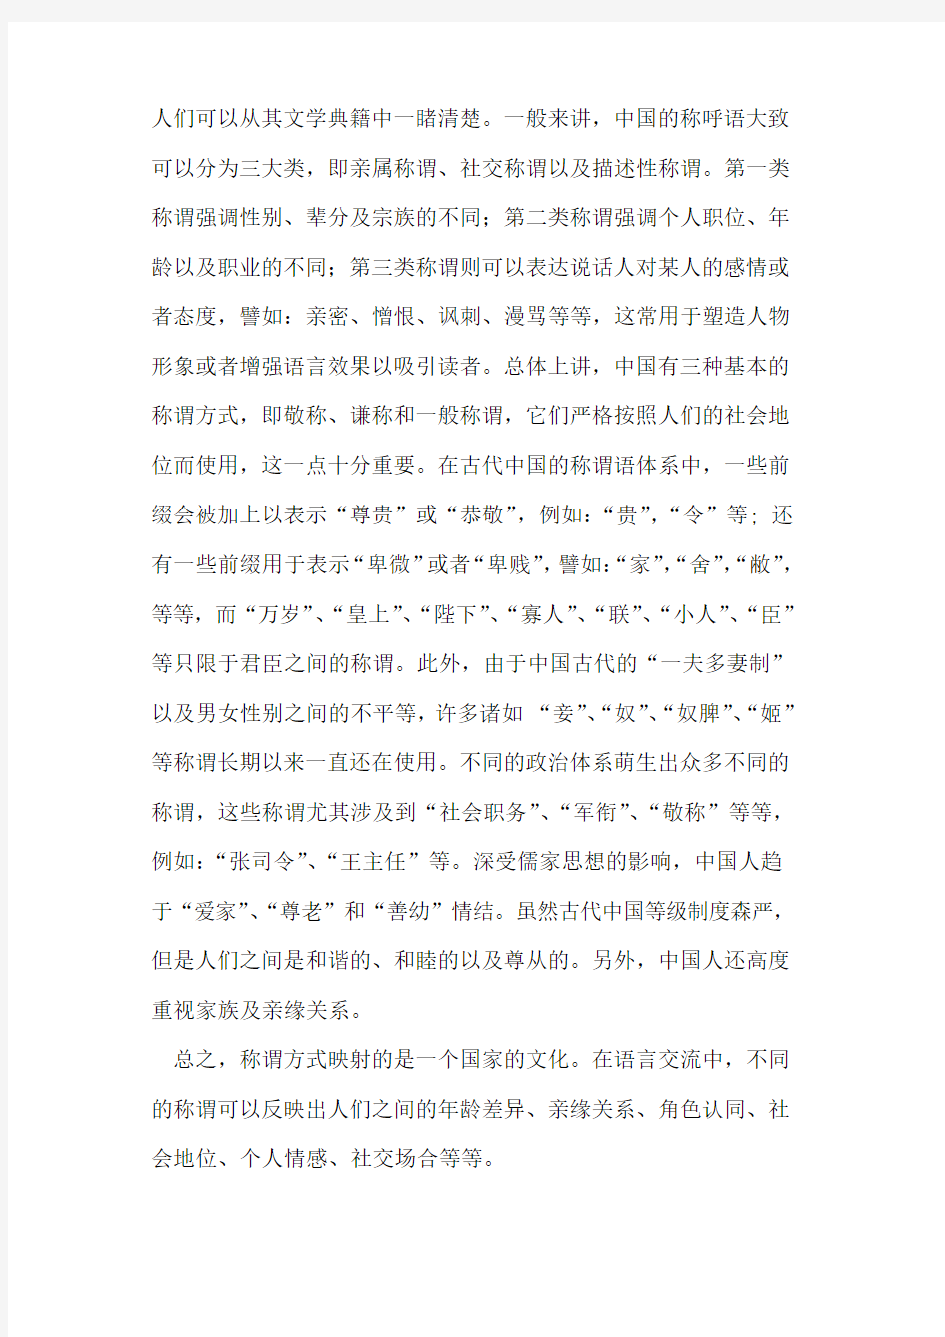 《骆驼祥子》英译本中中国称谓语的翻译